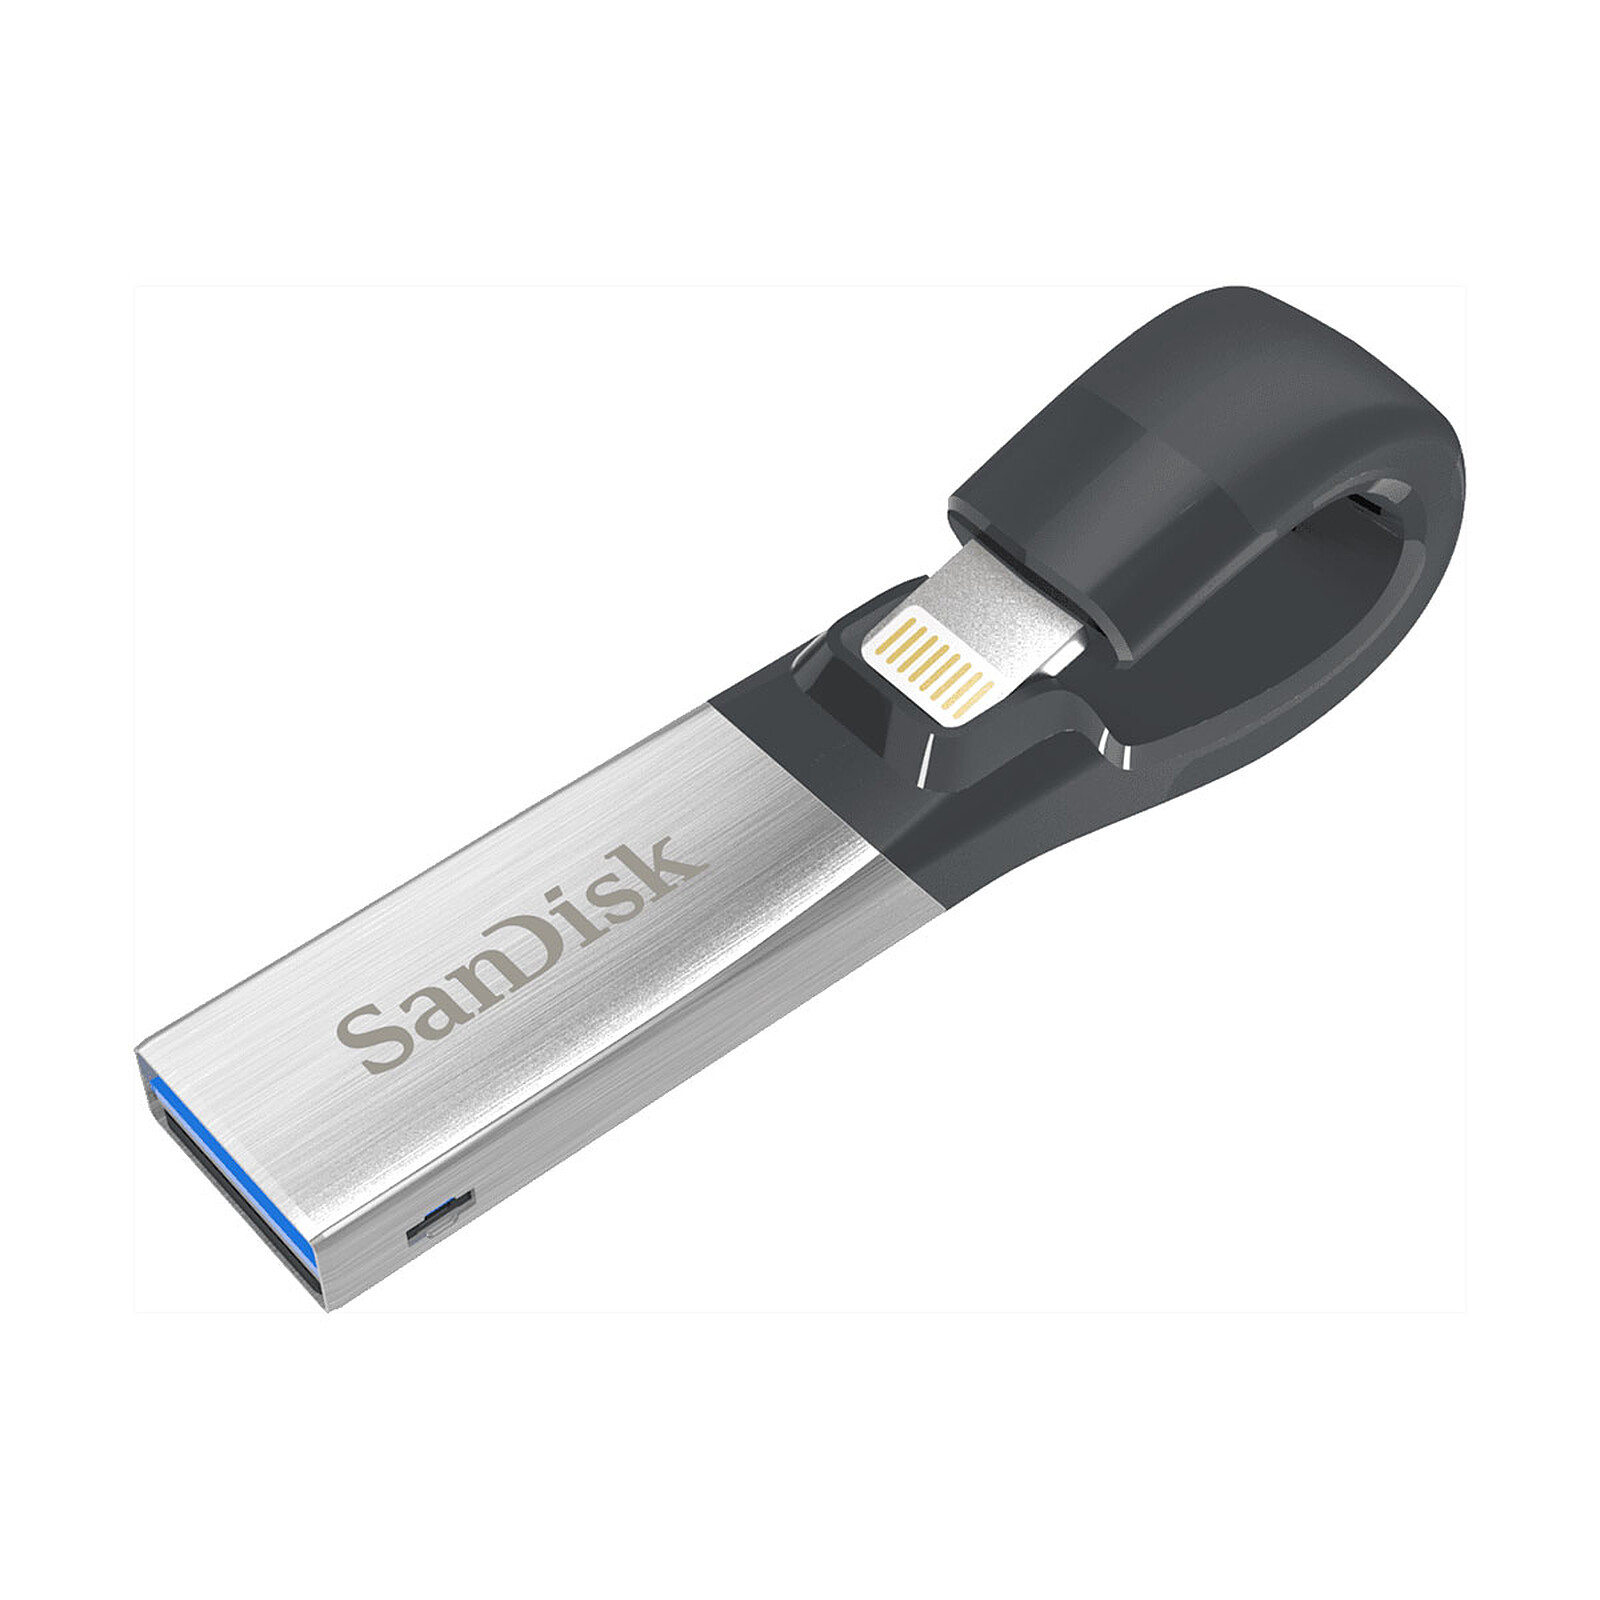 SanDisk Clé Ultra USB 3.0 16 Go - Clé USB - LDLC